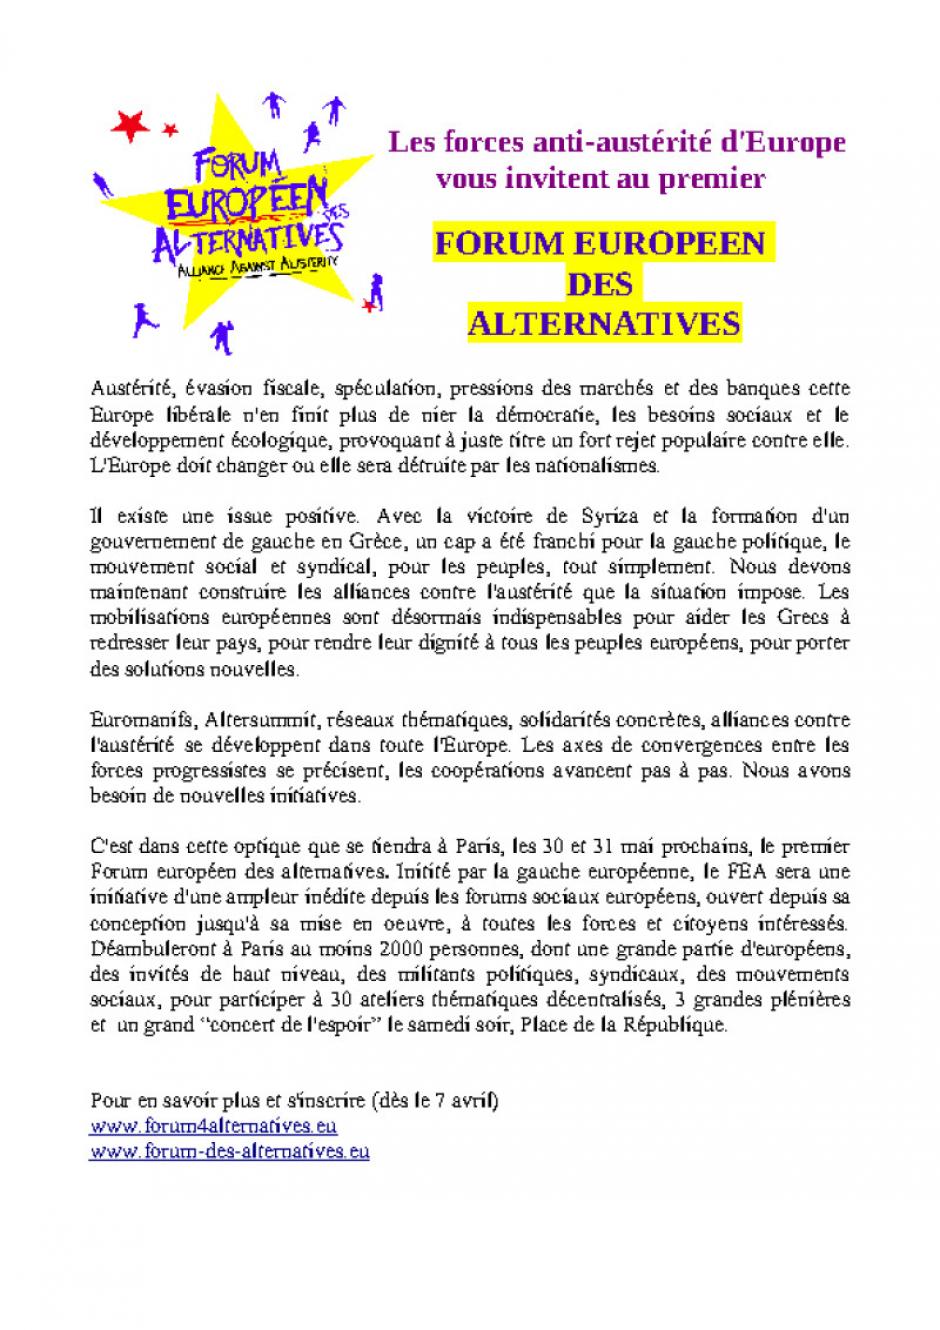 Forum européen des alternatives : 30 et 31 mai prochains à Paris